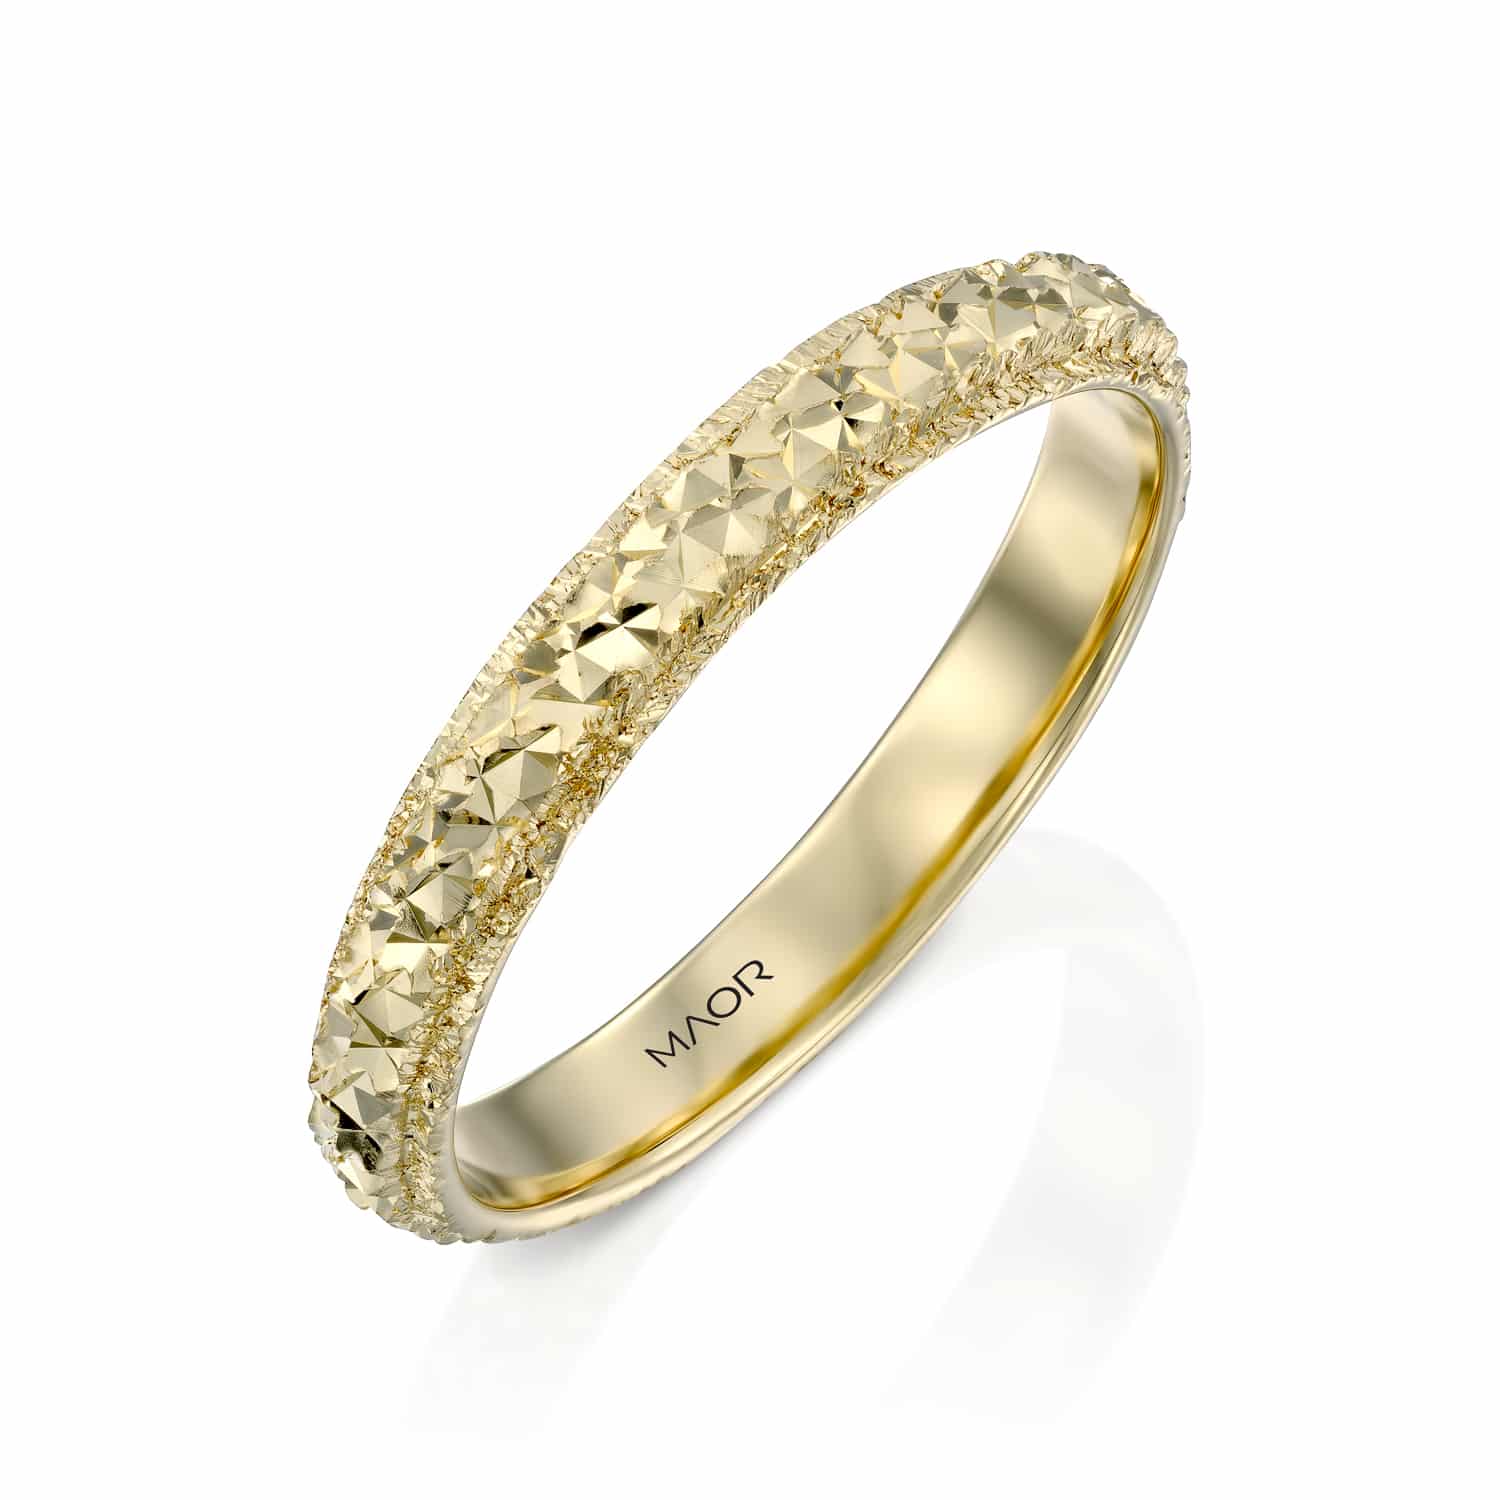 טבעת נישואין זהב צהוב